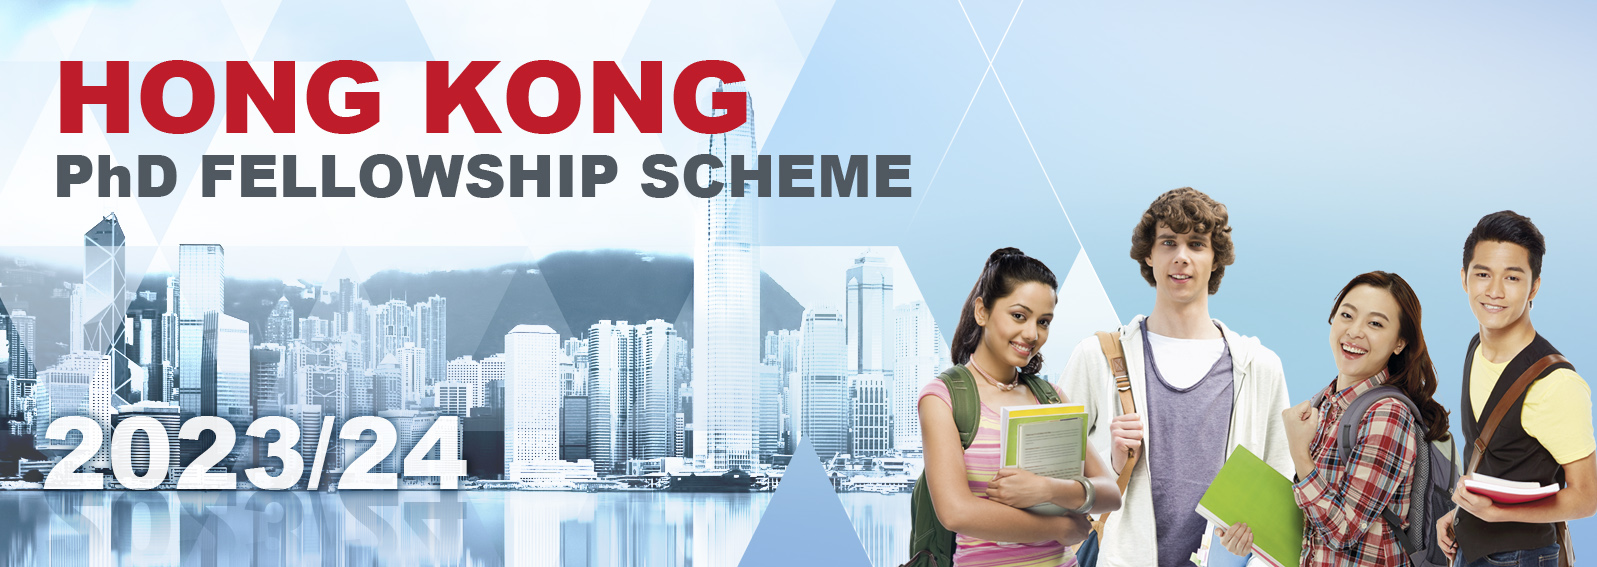 Hong Kong PhD Fellowships Scheme